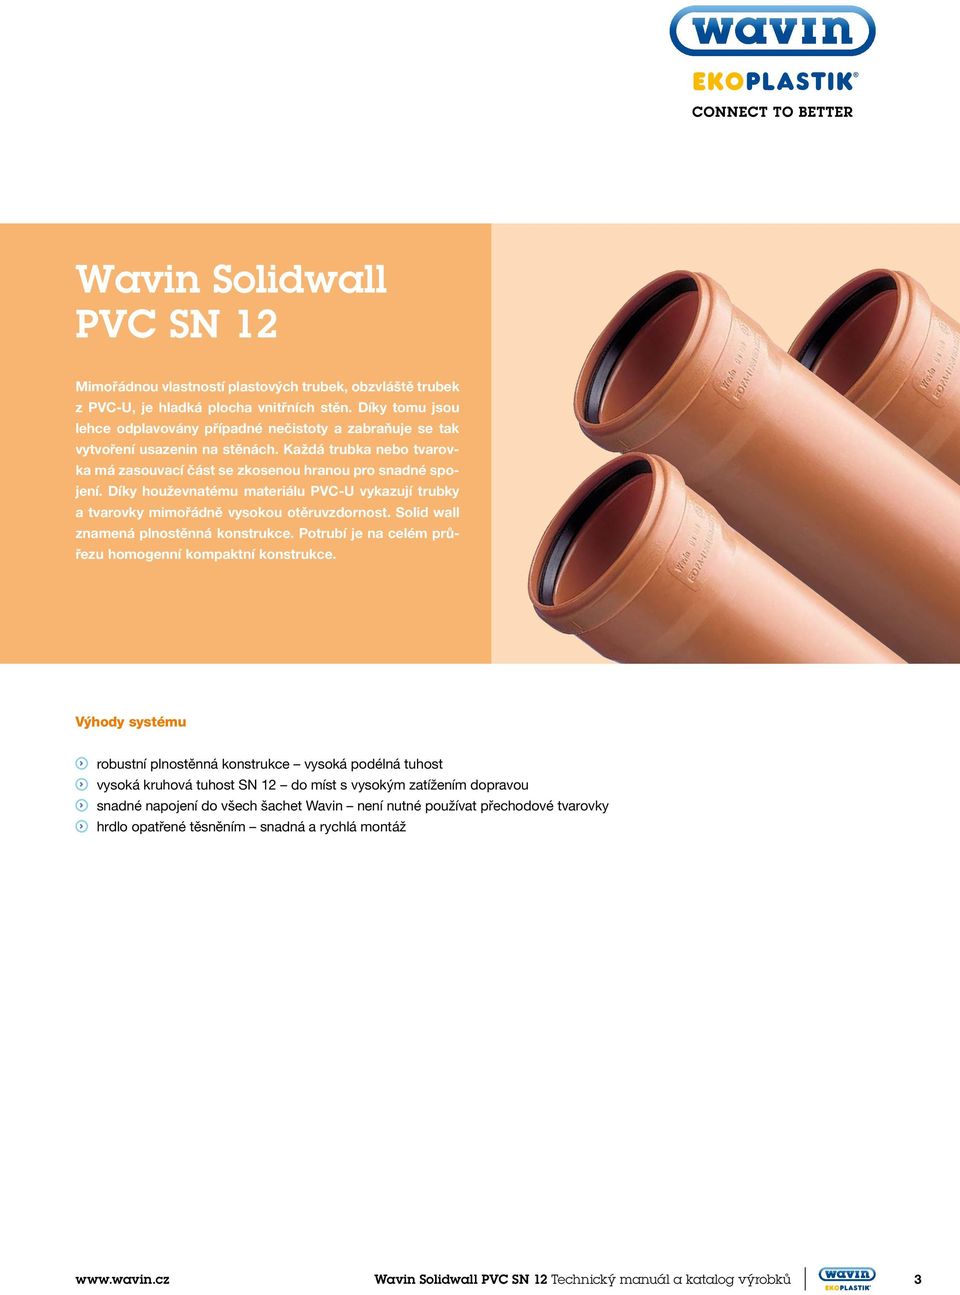 íky houževnatému materiálu PVC-U vykazují trubky a tvarovky mimořádně vysokou otěruvzdornost. Solid wall znamená plnostěnná konstrukce. Potrubí je na celém průřezu homogenní kompaktní konstrukce.